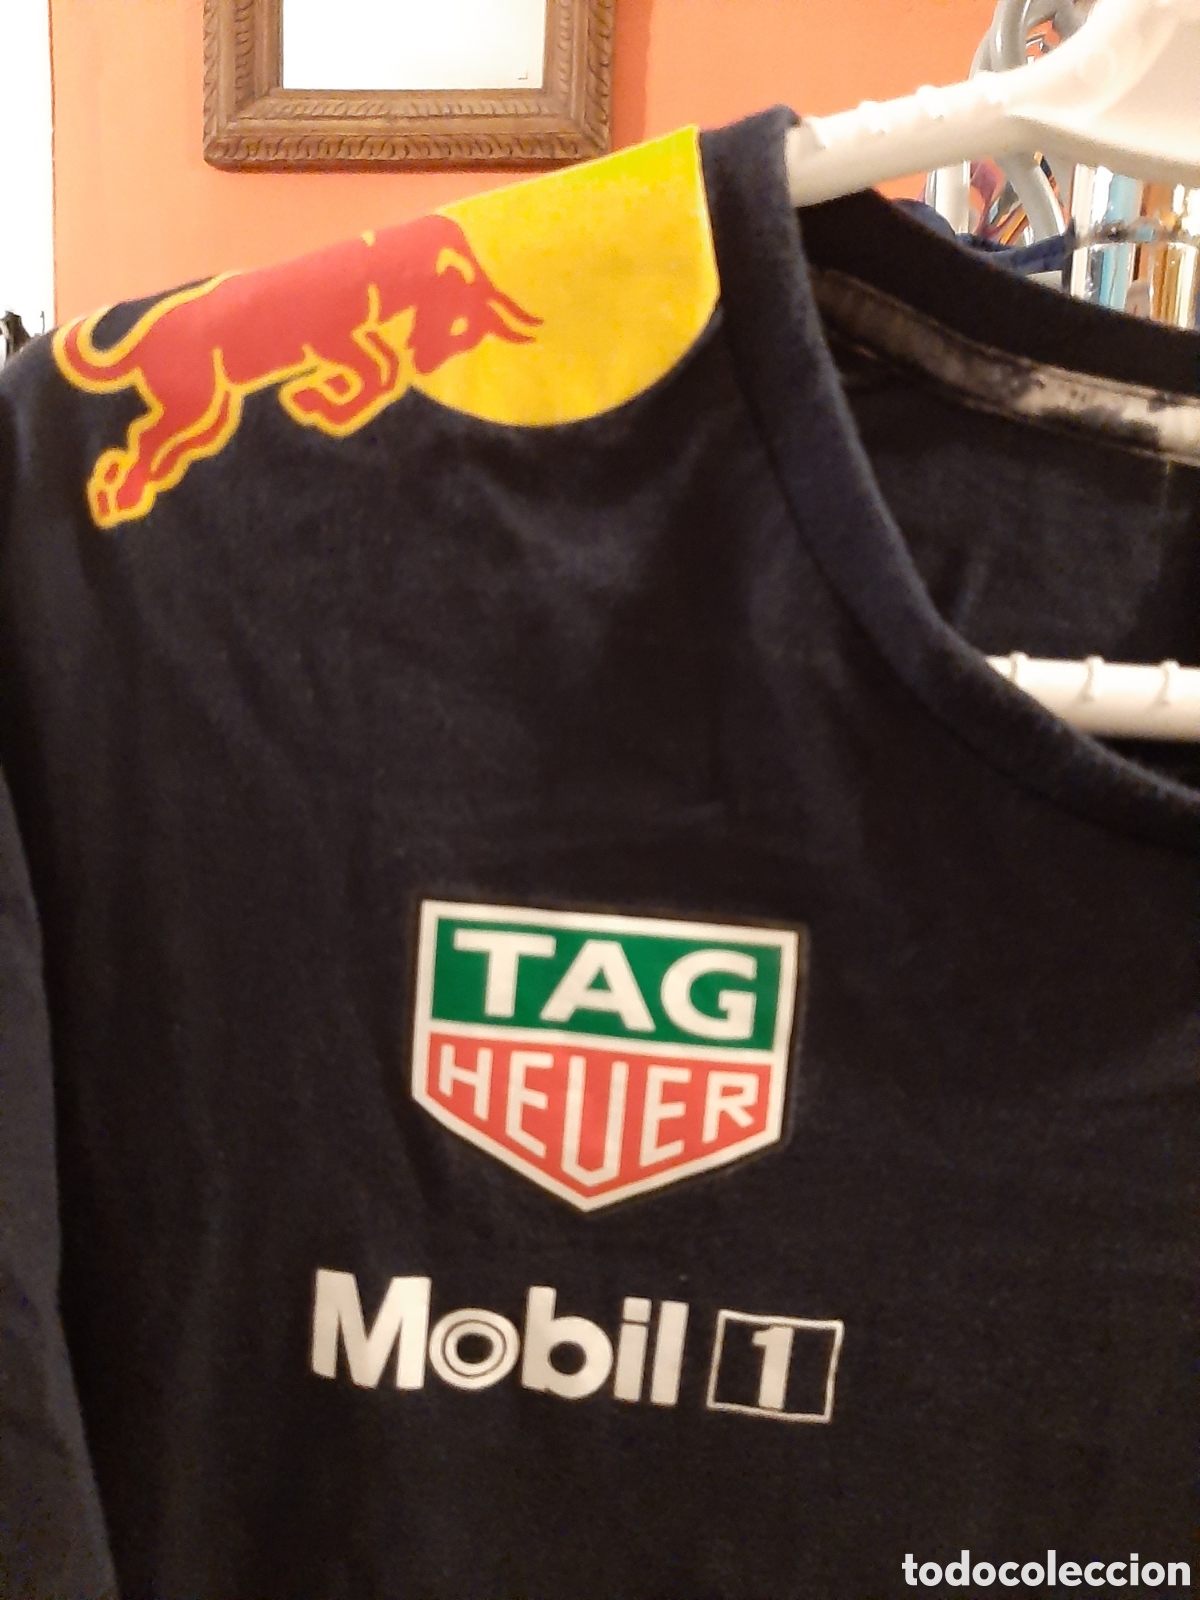 camiseta oficial red bull f1 team - Compra venta en todocoleccion